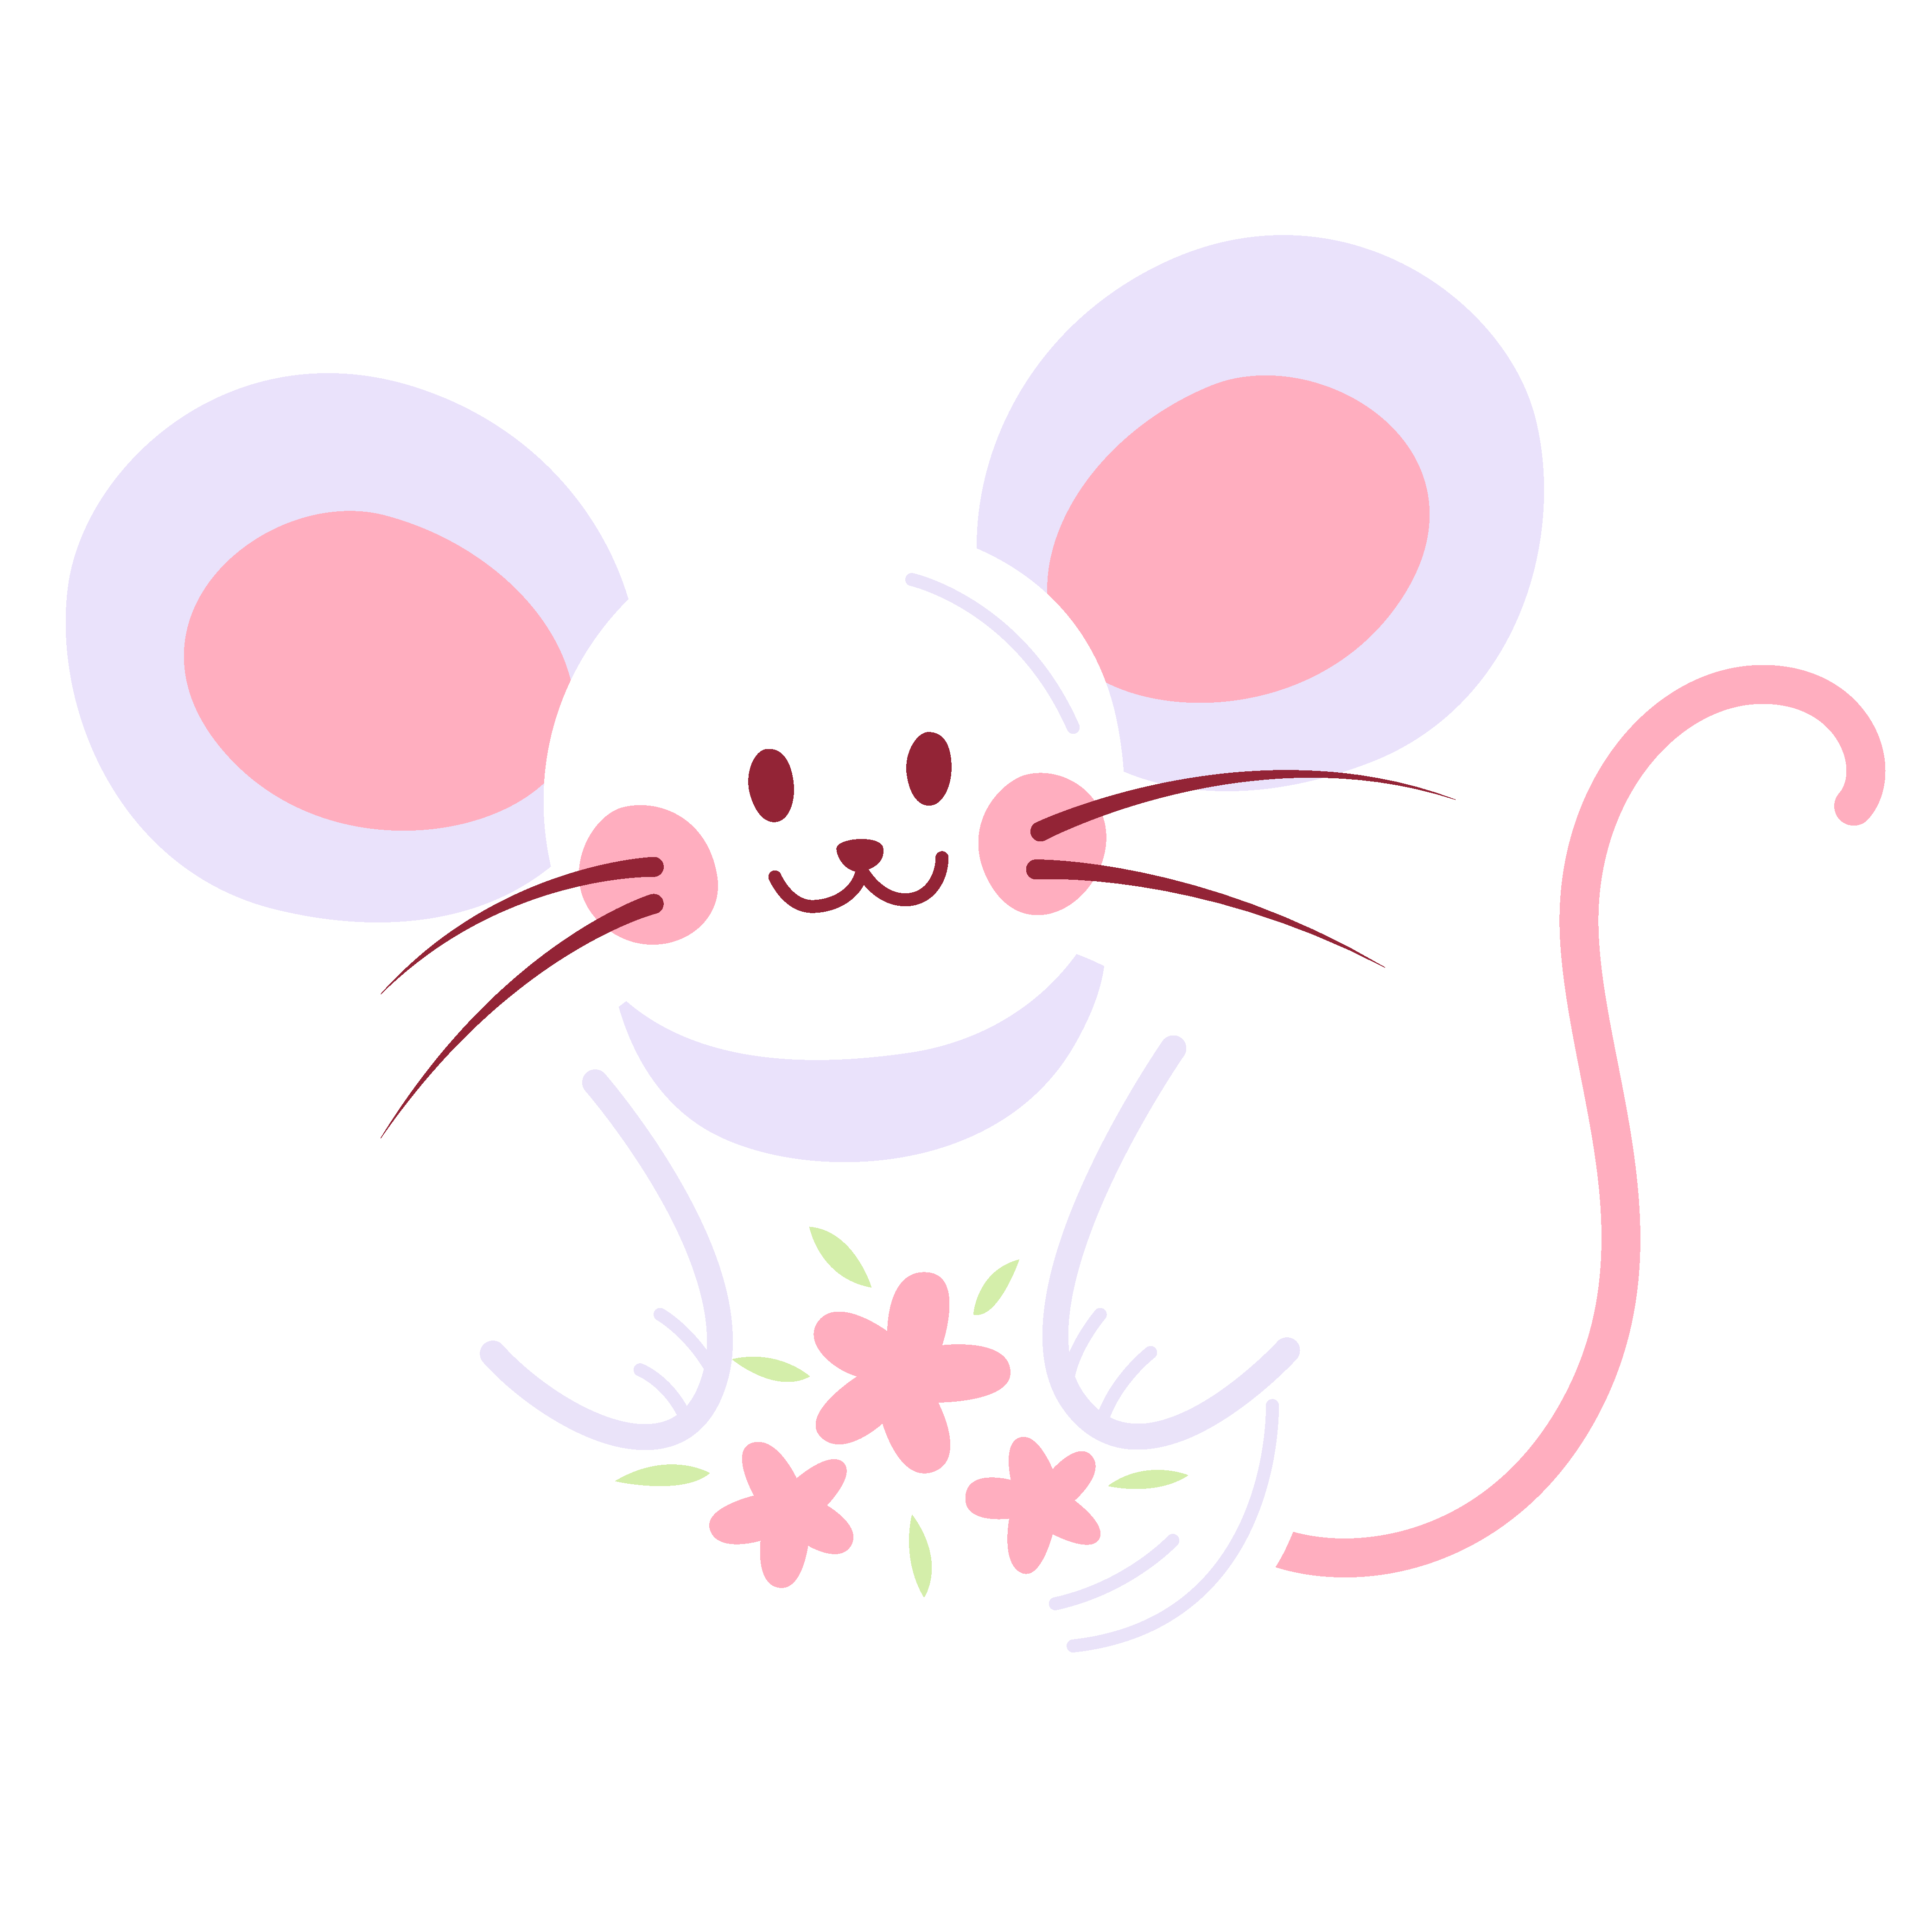 可爱的小白鼠高清动物壁纸-壁纸图片大全